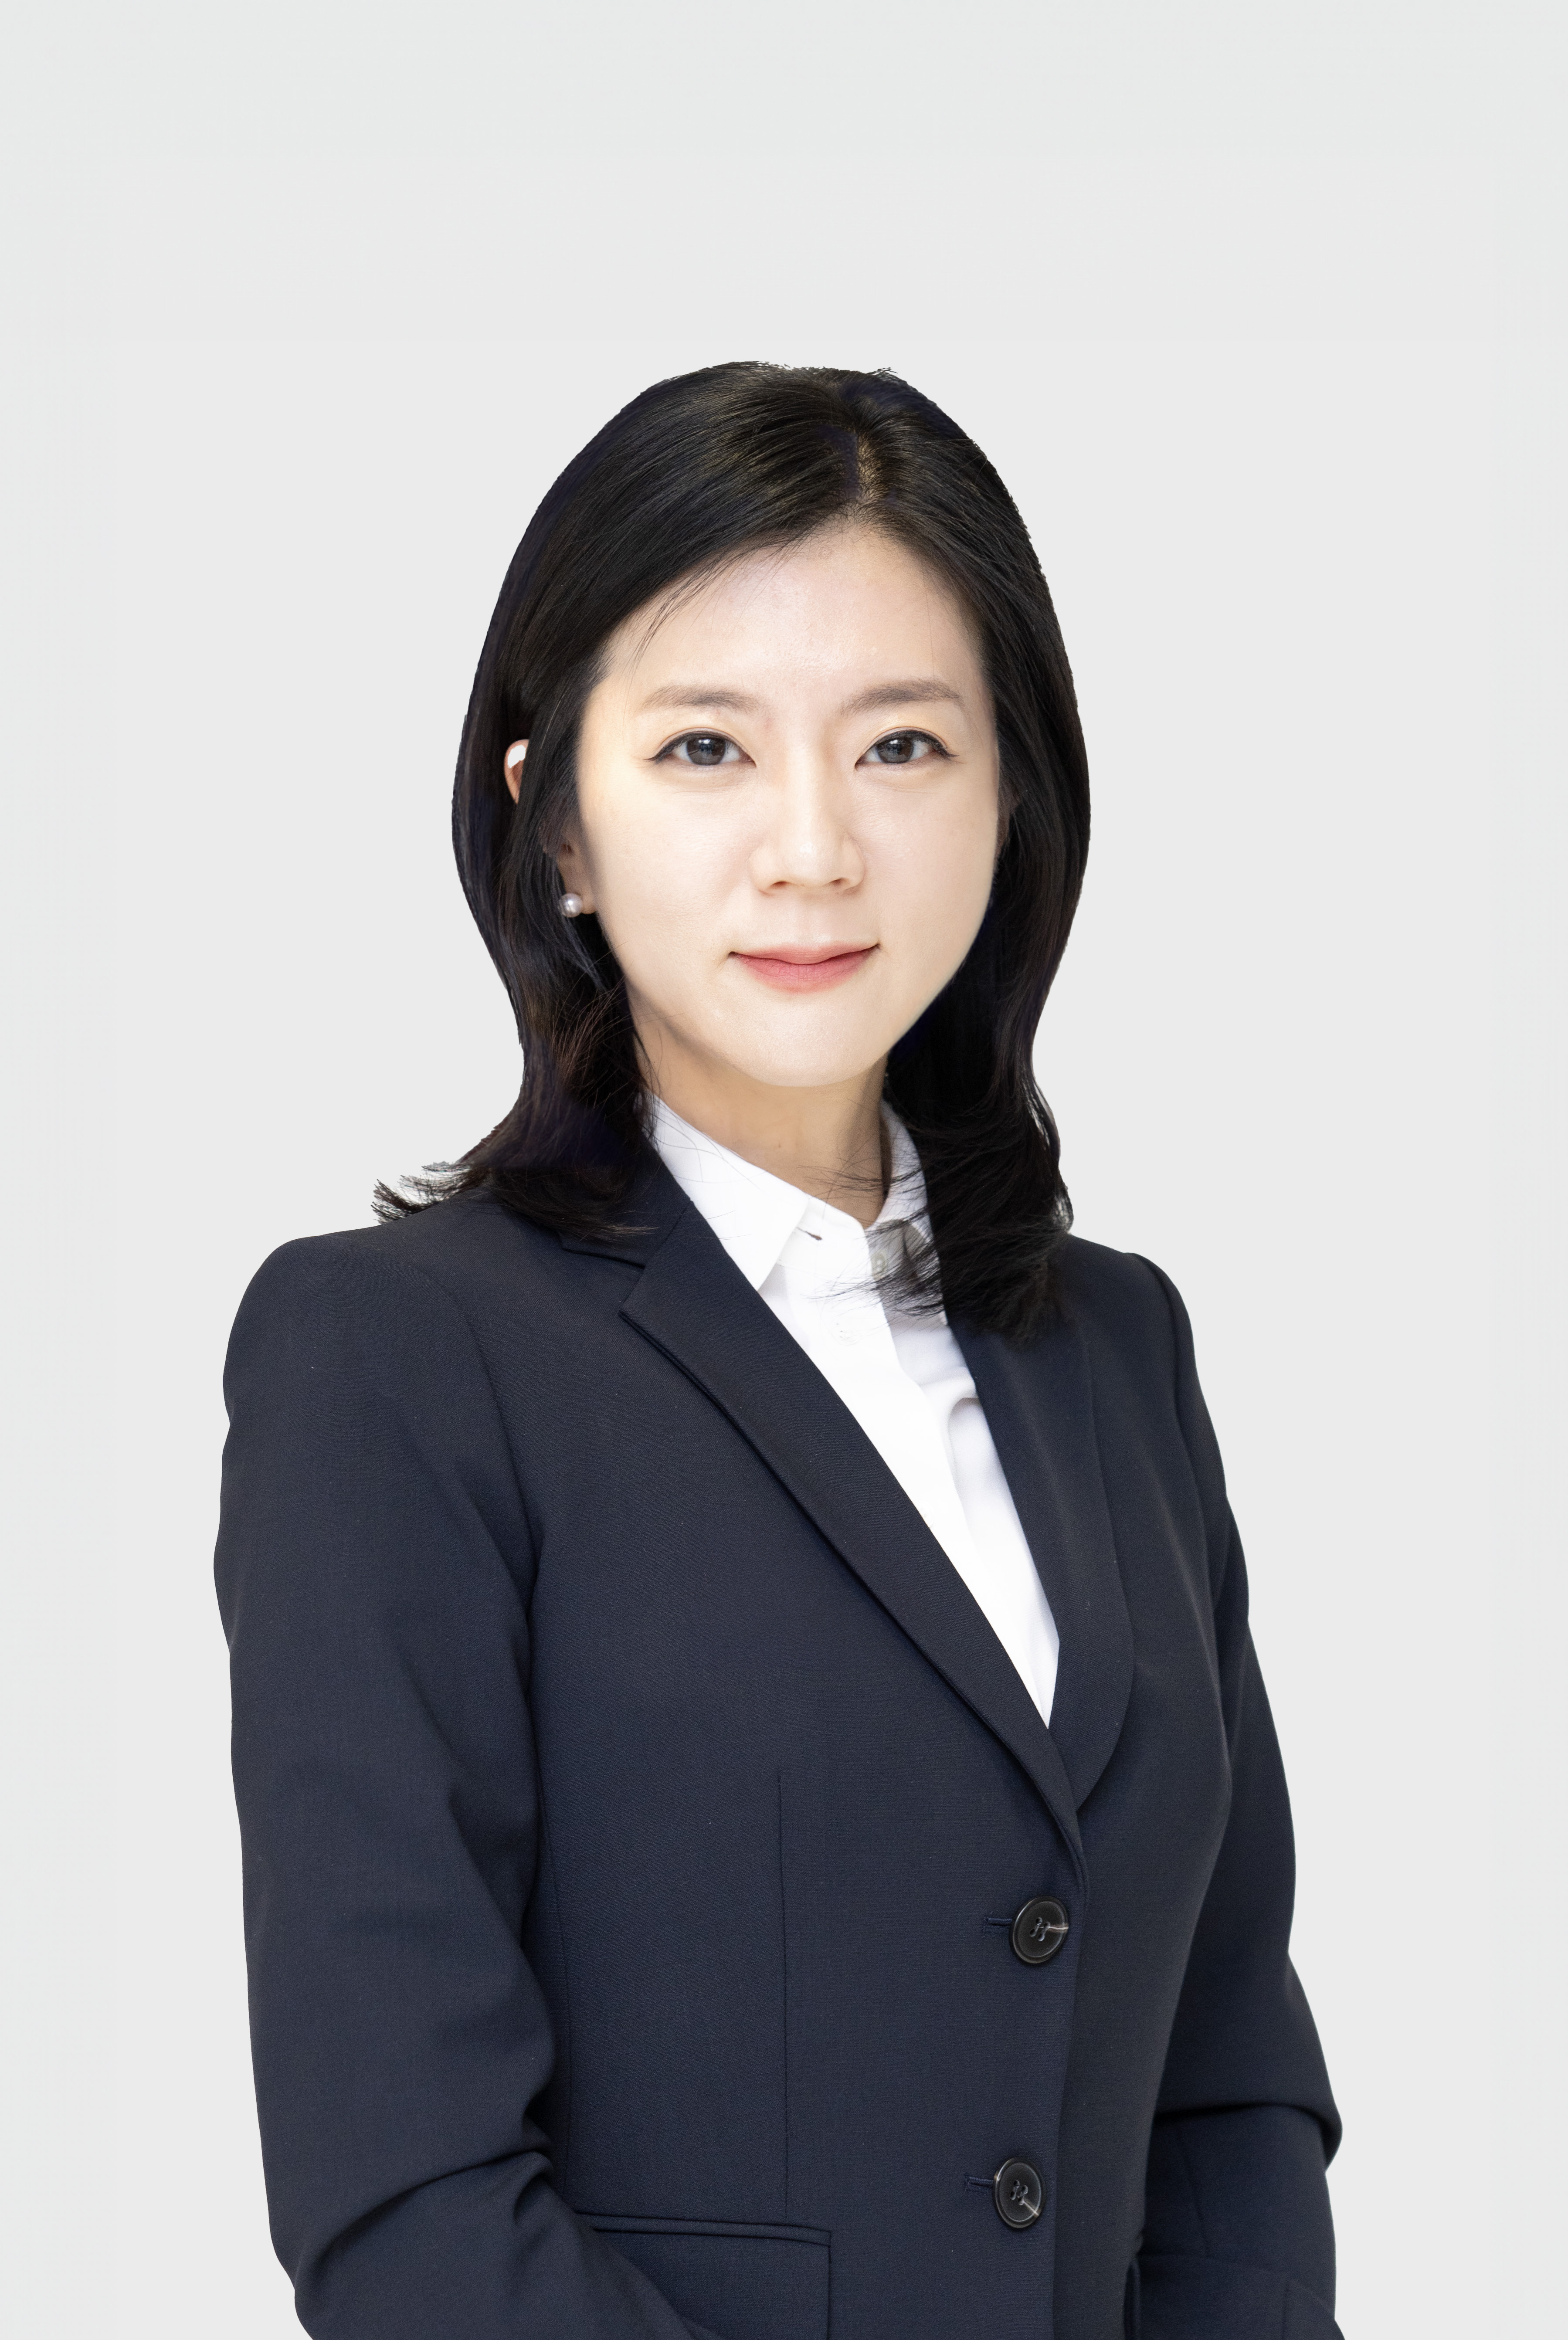 Jee Eun Sarah  Chung